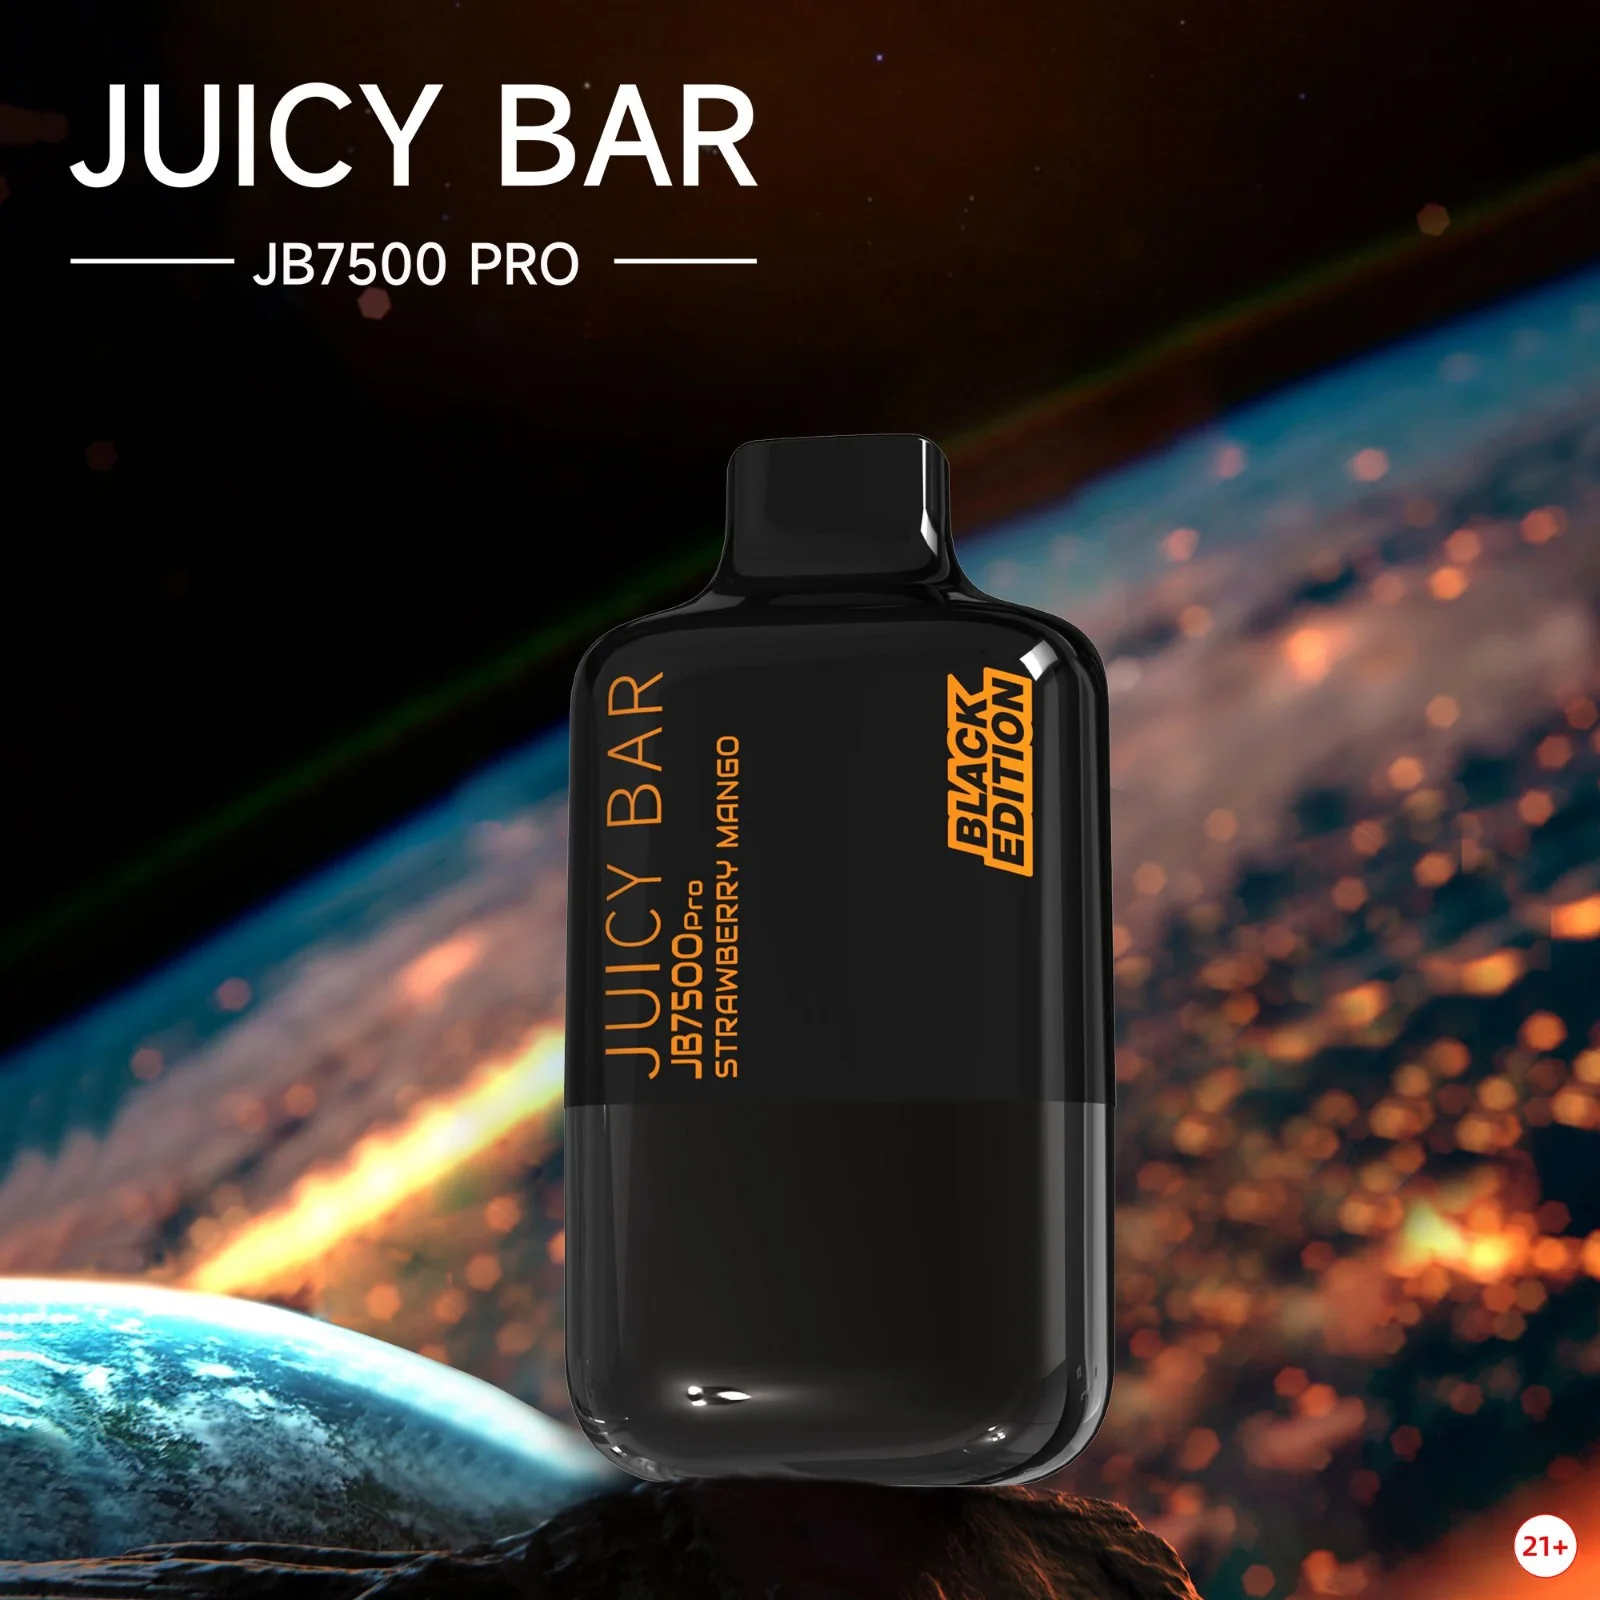 Juicy bar